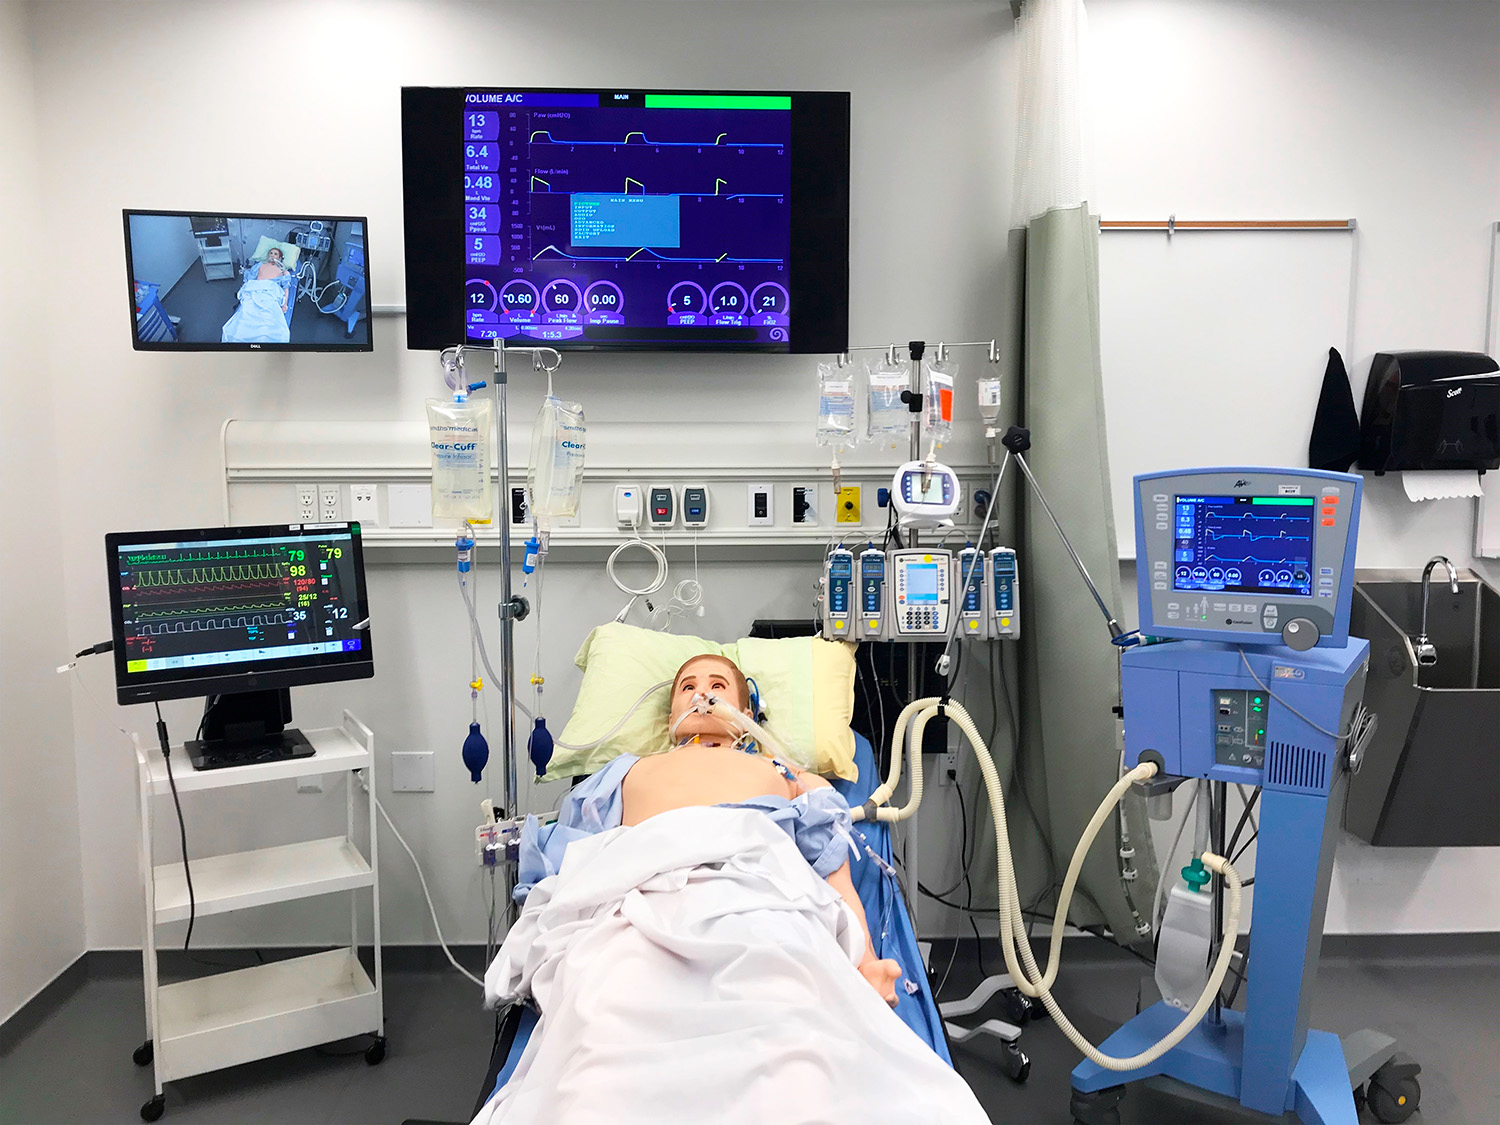 Les stations des lits du laboratoire disposent de nombreux équipements audiovisuels et d'un simulateur de patient avec des capacités audiovisuelles interactives.